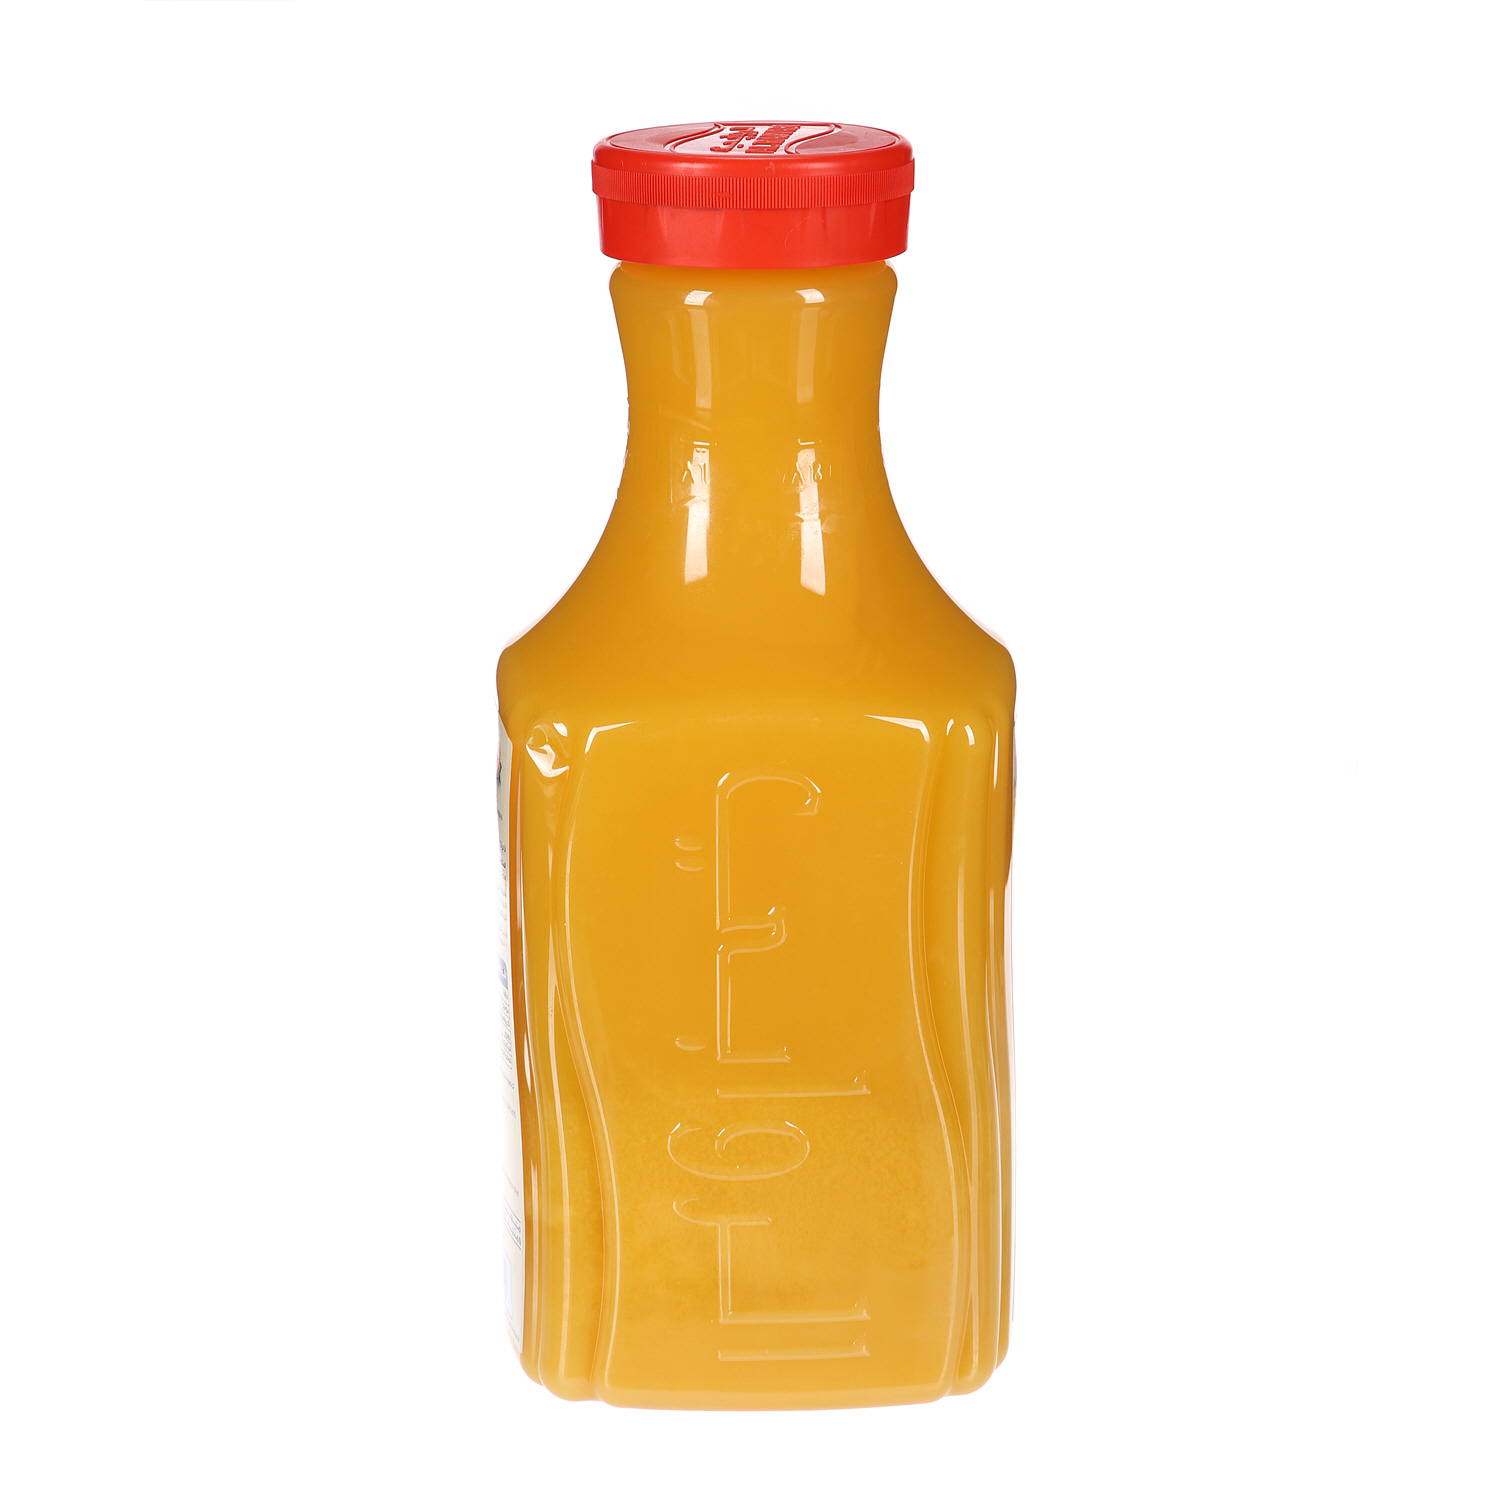 الروابي عصير البرتقال 1.75 لتر